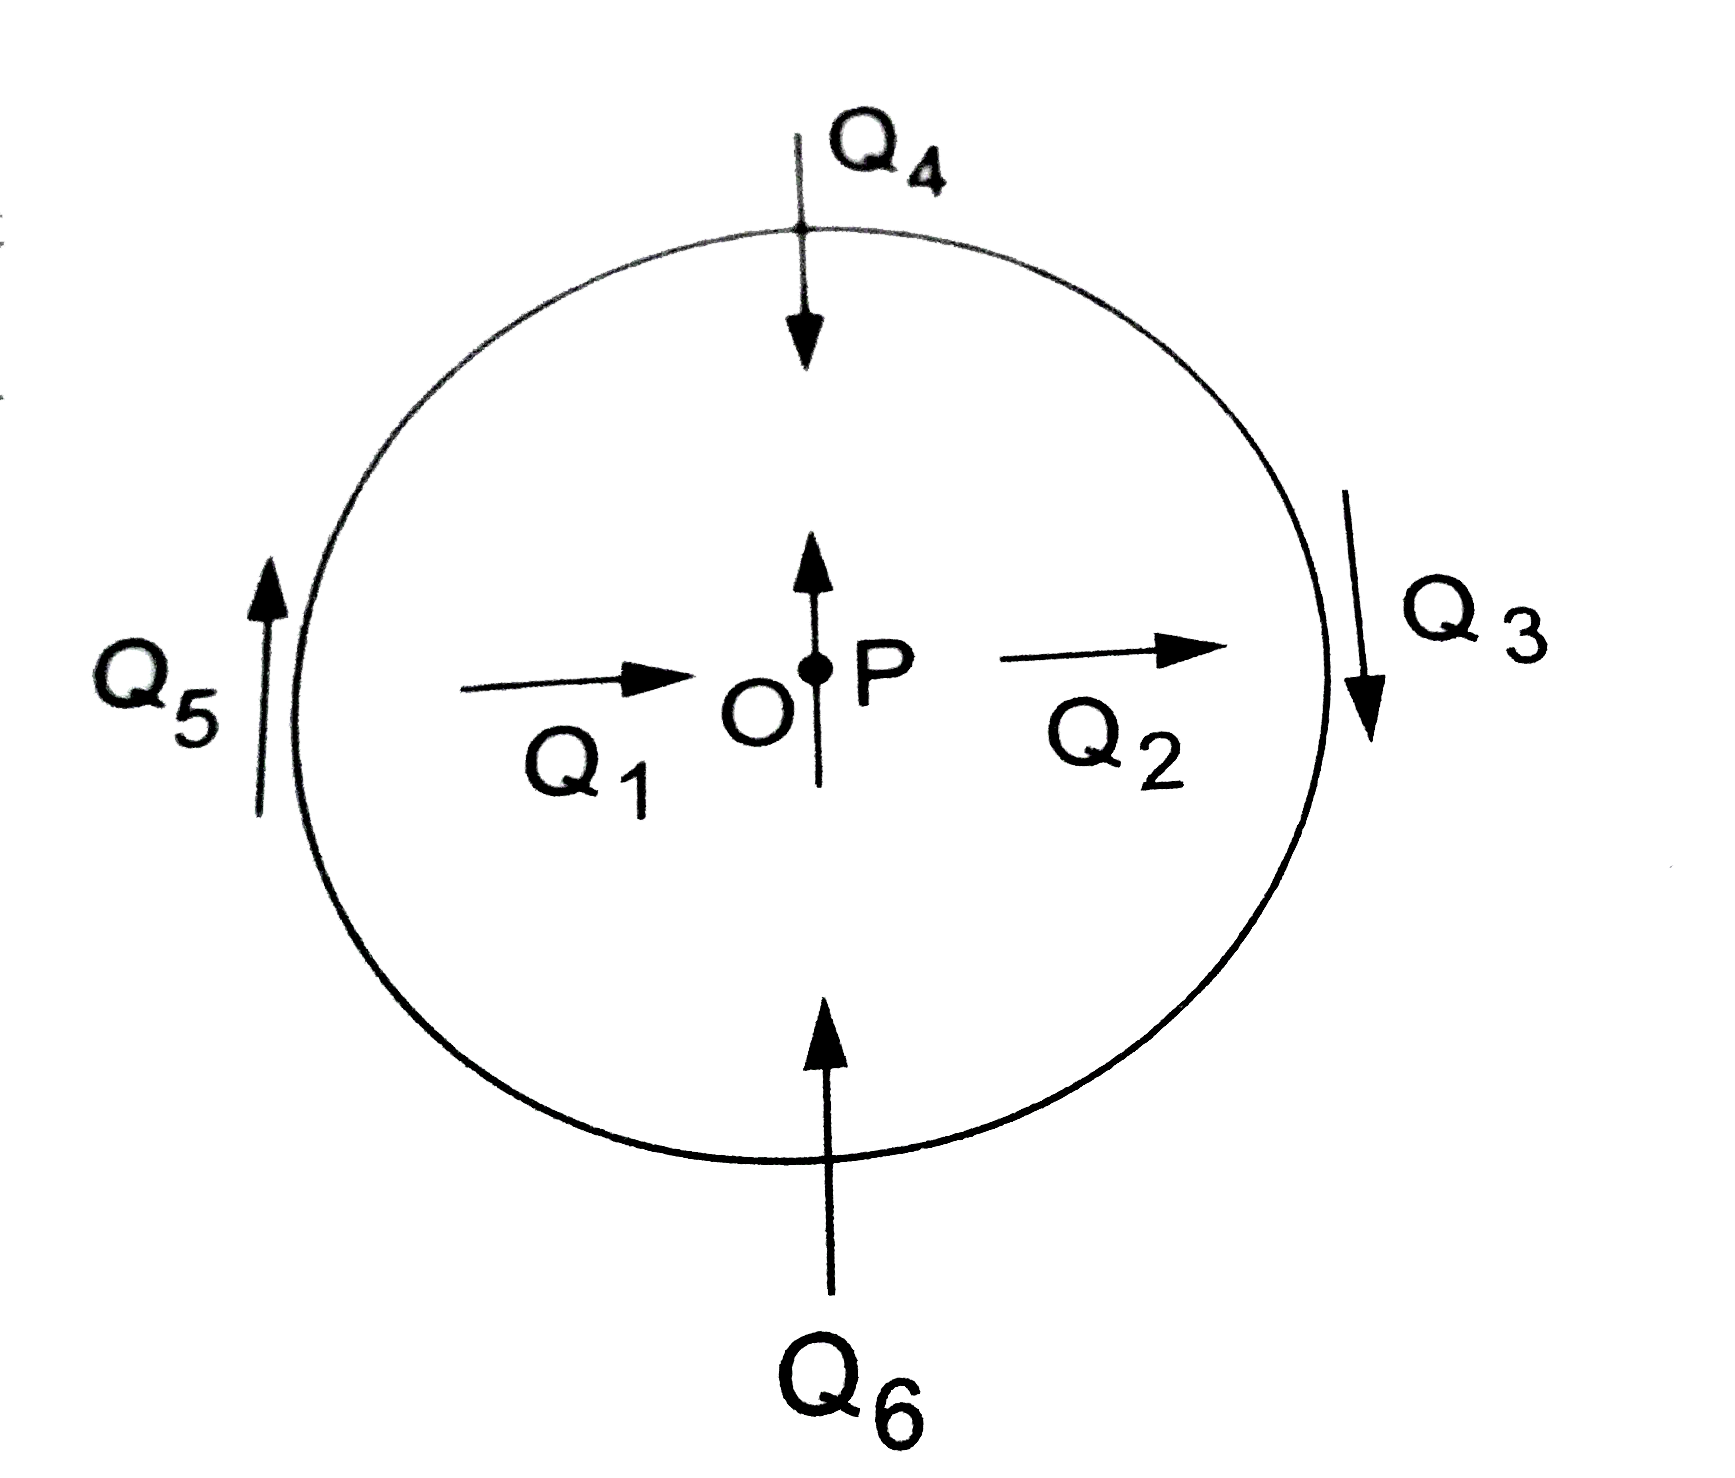 चित्र में केंद्र O पर स्थित एक छोटी चुंबकीय सुई प्रदर्शित है जिसमे तीर चिन्ह से चुंबकीय आघूर्ण की दिशा दर्शाई गई है । अन्य तीर दूसरी चुंबकीय सुई Q की विभिन्न स्थितियों एवं उनके चुंबकीय आघूर्ण की दिशा दर्शा रहे हैं ।    (a) किस स्थिति में यह निकाय संतुलन में नहीं होगा ?   (b) किस स्थिति में निकाय (i) स्थायी, (ii) अस्थायी संतुलन में होगा ? तथा   (c) सभी प्रदर्शित स्थितियों में से किस स्थिति में निकाय की स्थतिज ऊर्जा न्यूनतम है ?